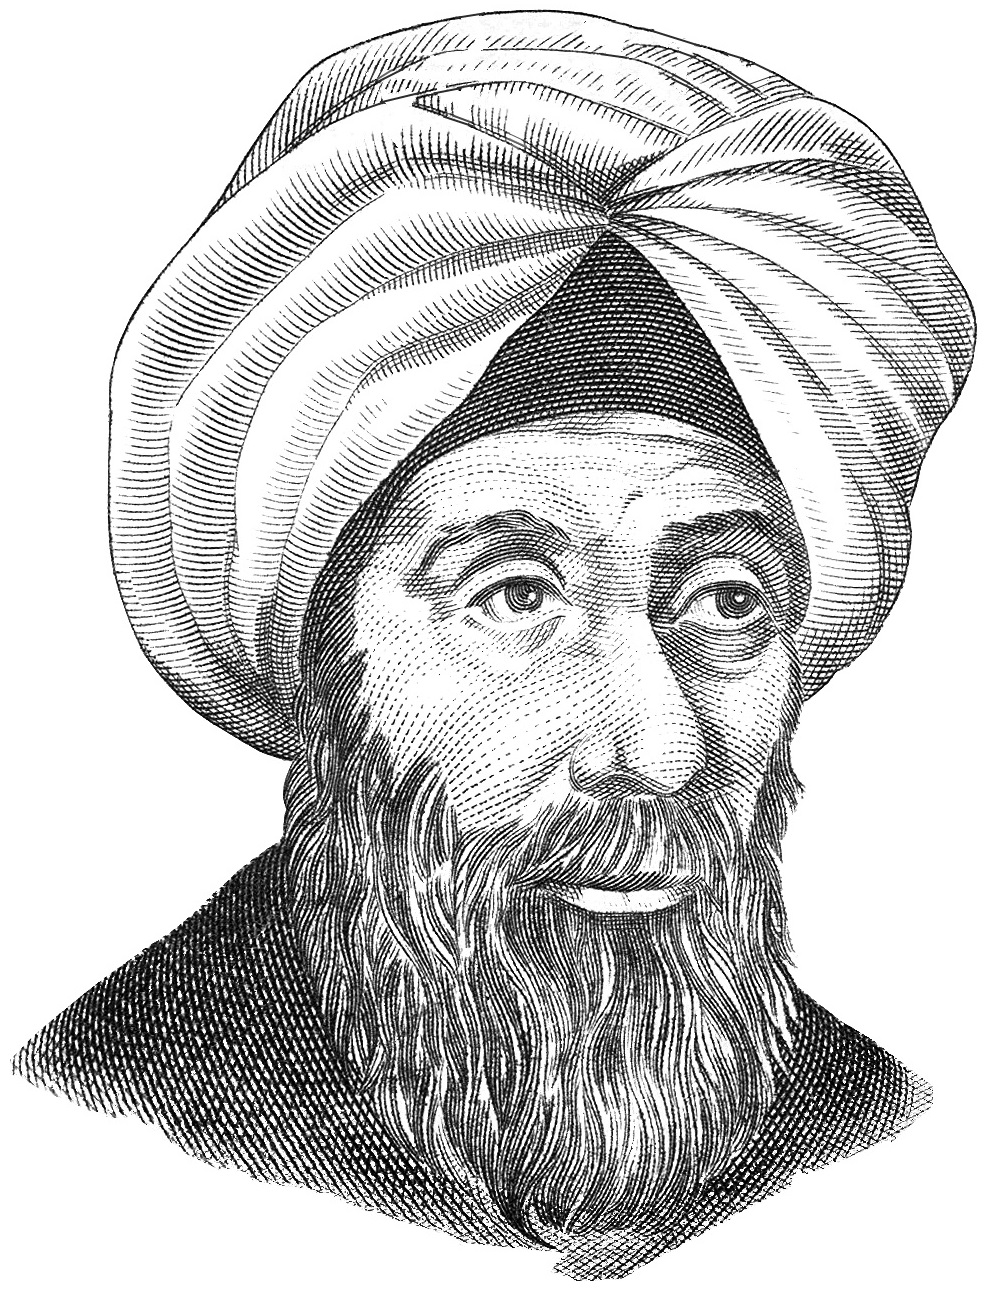 Ибн аль-Хайсам — арабский ученый-универсал: математик, механик, физик и астроном